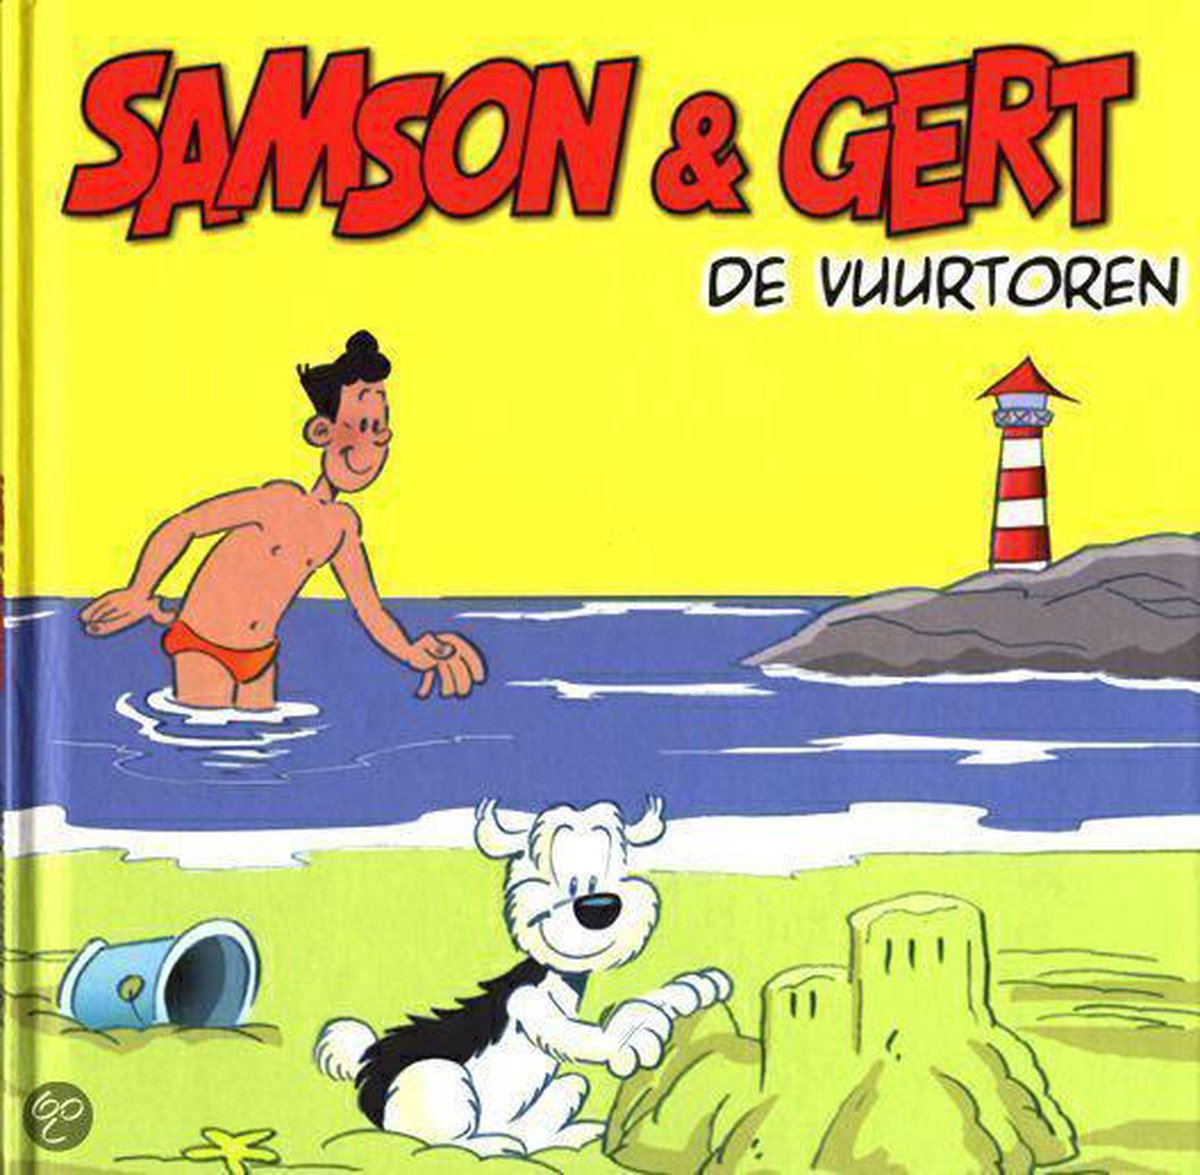 Samson & Gert: De Vuurtoren